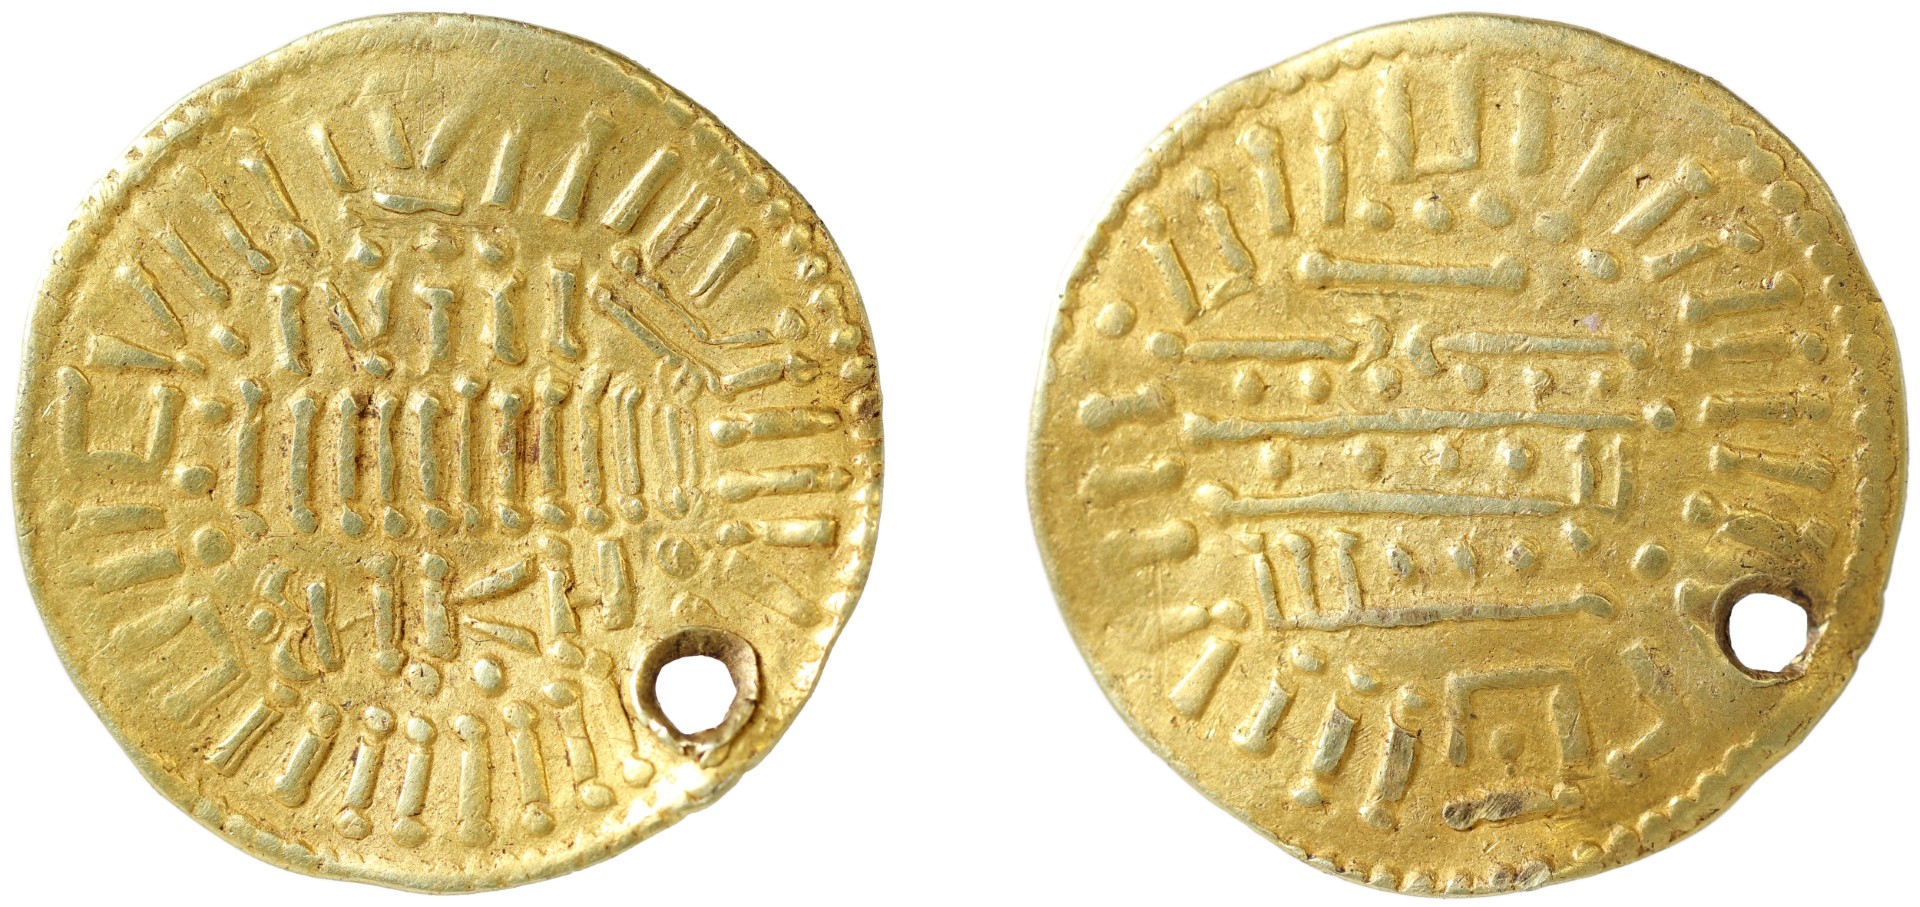 Detektorový nález zlaté vikinské pseudomince prohlášen za poklad